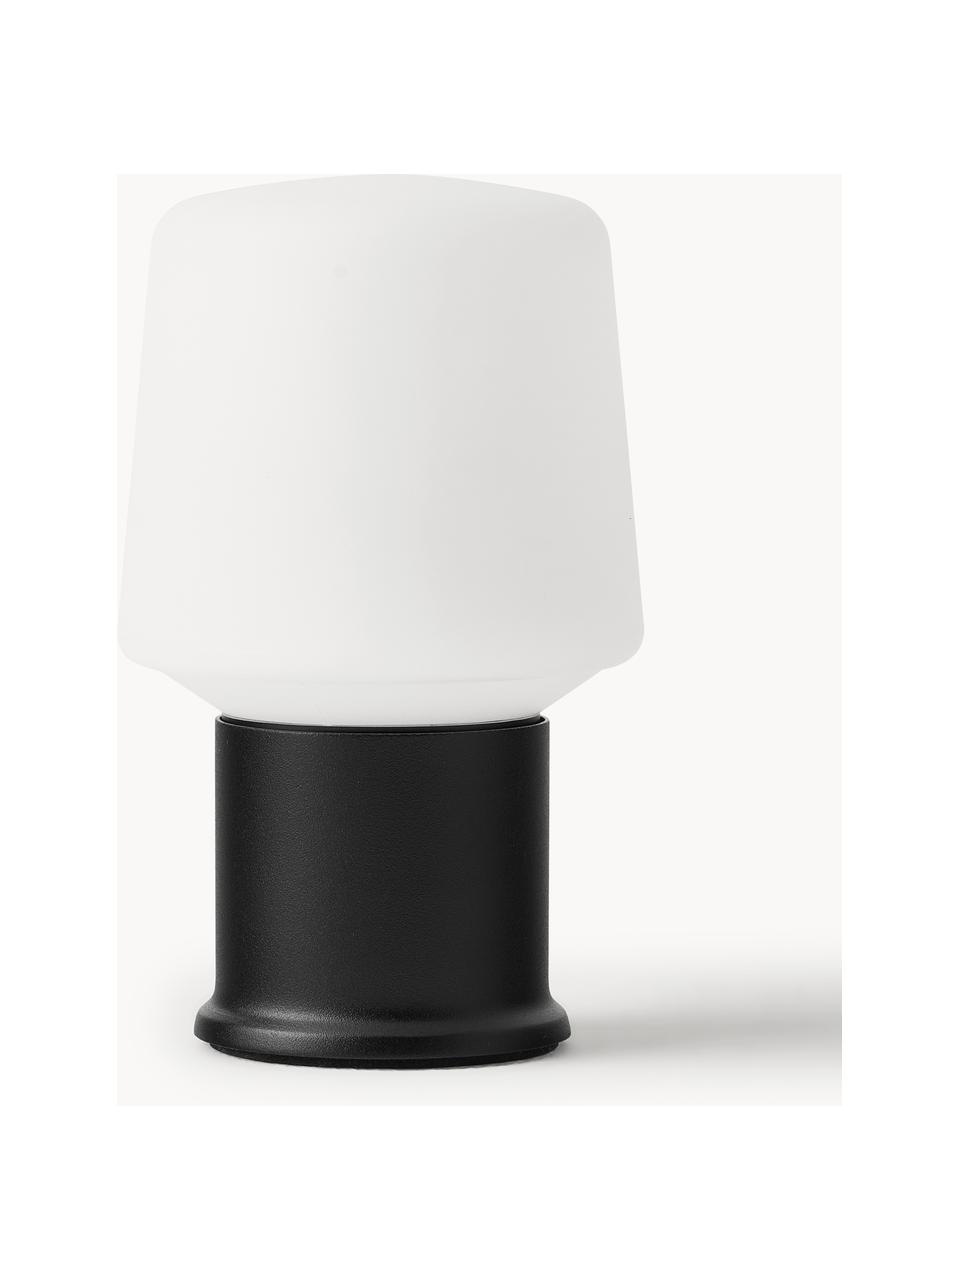 Zewnętrzna lampa stołowa LED z funkcją przyciemniania London, Tworzywo sztuczne, Biały, czarny, Ø 9 x 15 cm